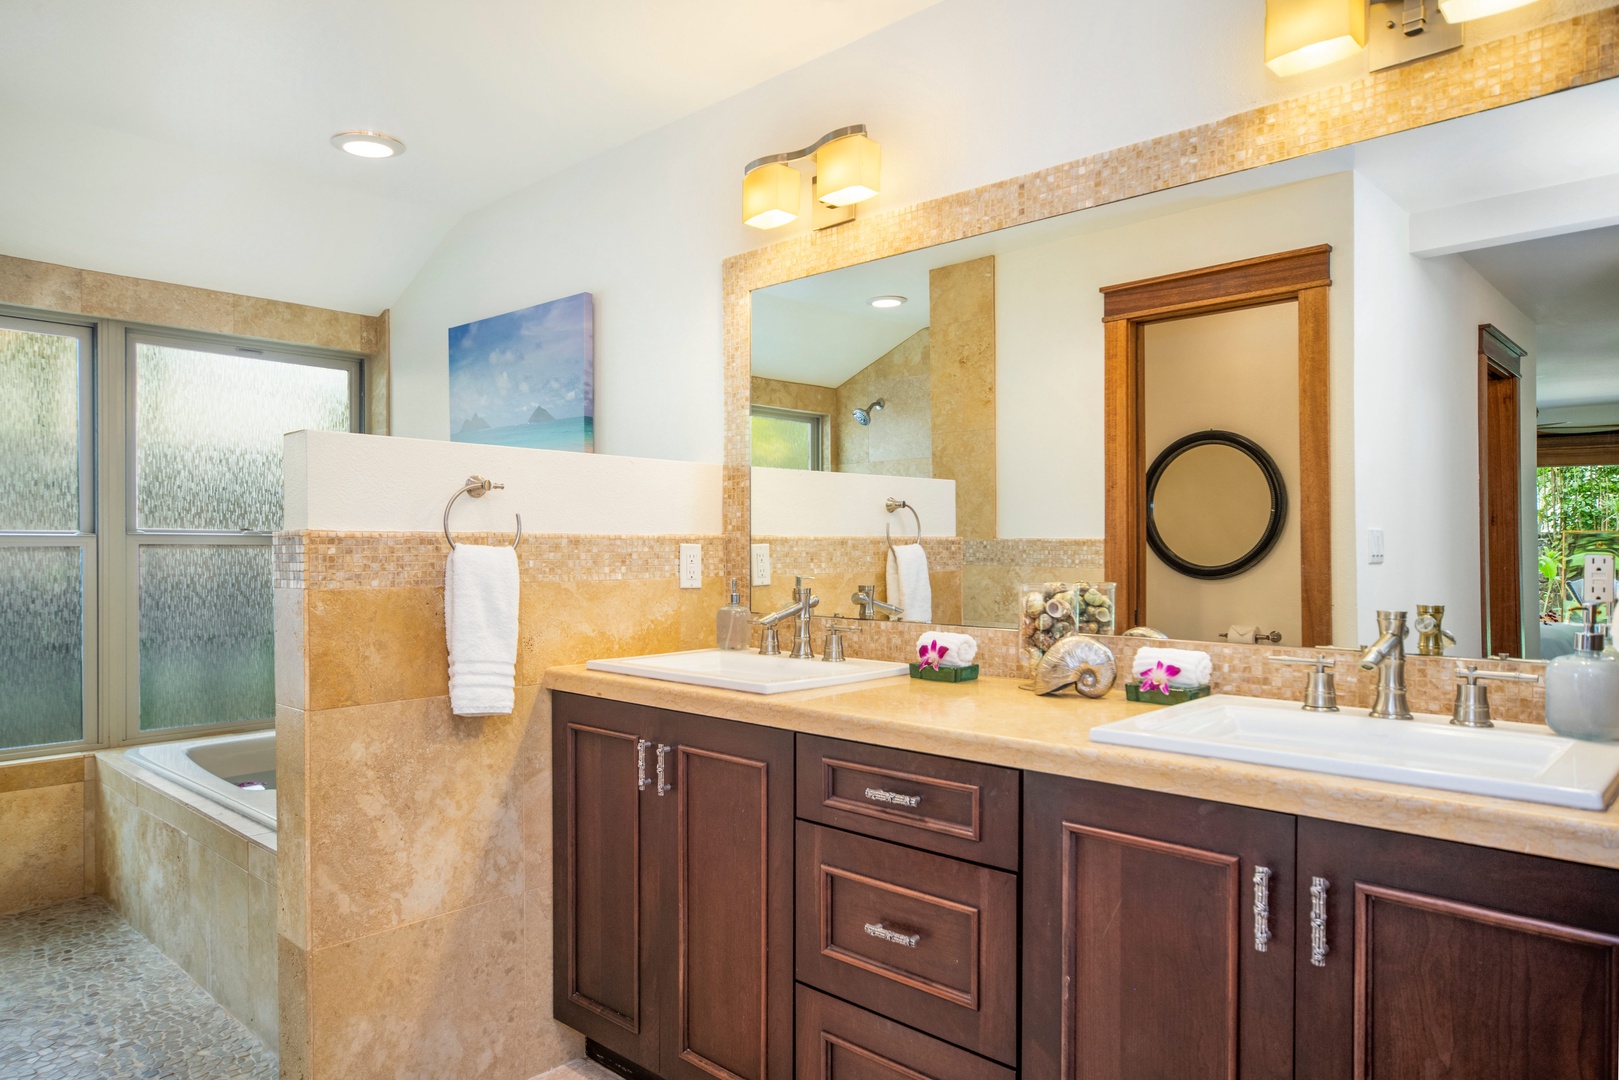 Honolulu Vacation Rentals, Hale Niuiki - Primary en-suite bathroom with dual sink and wide vanity space.